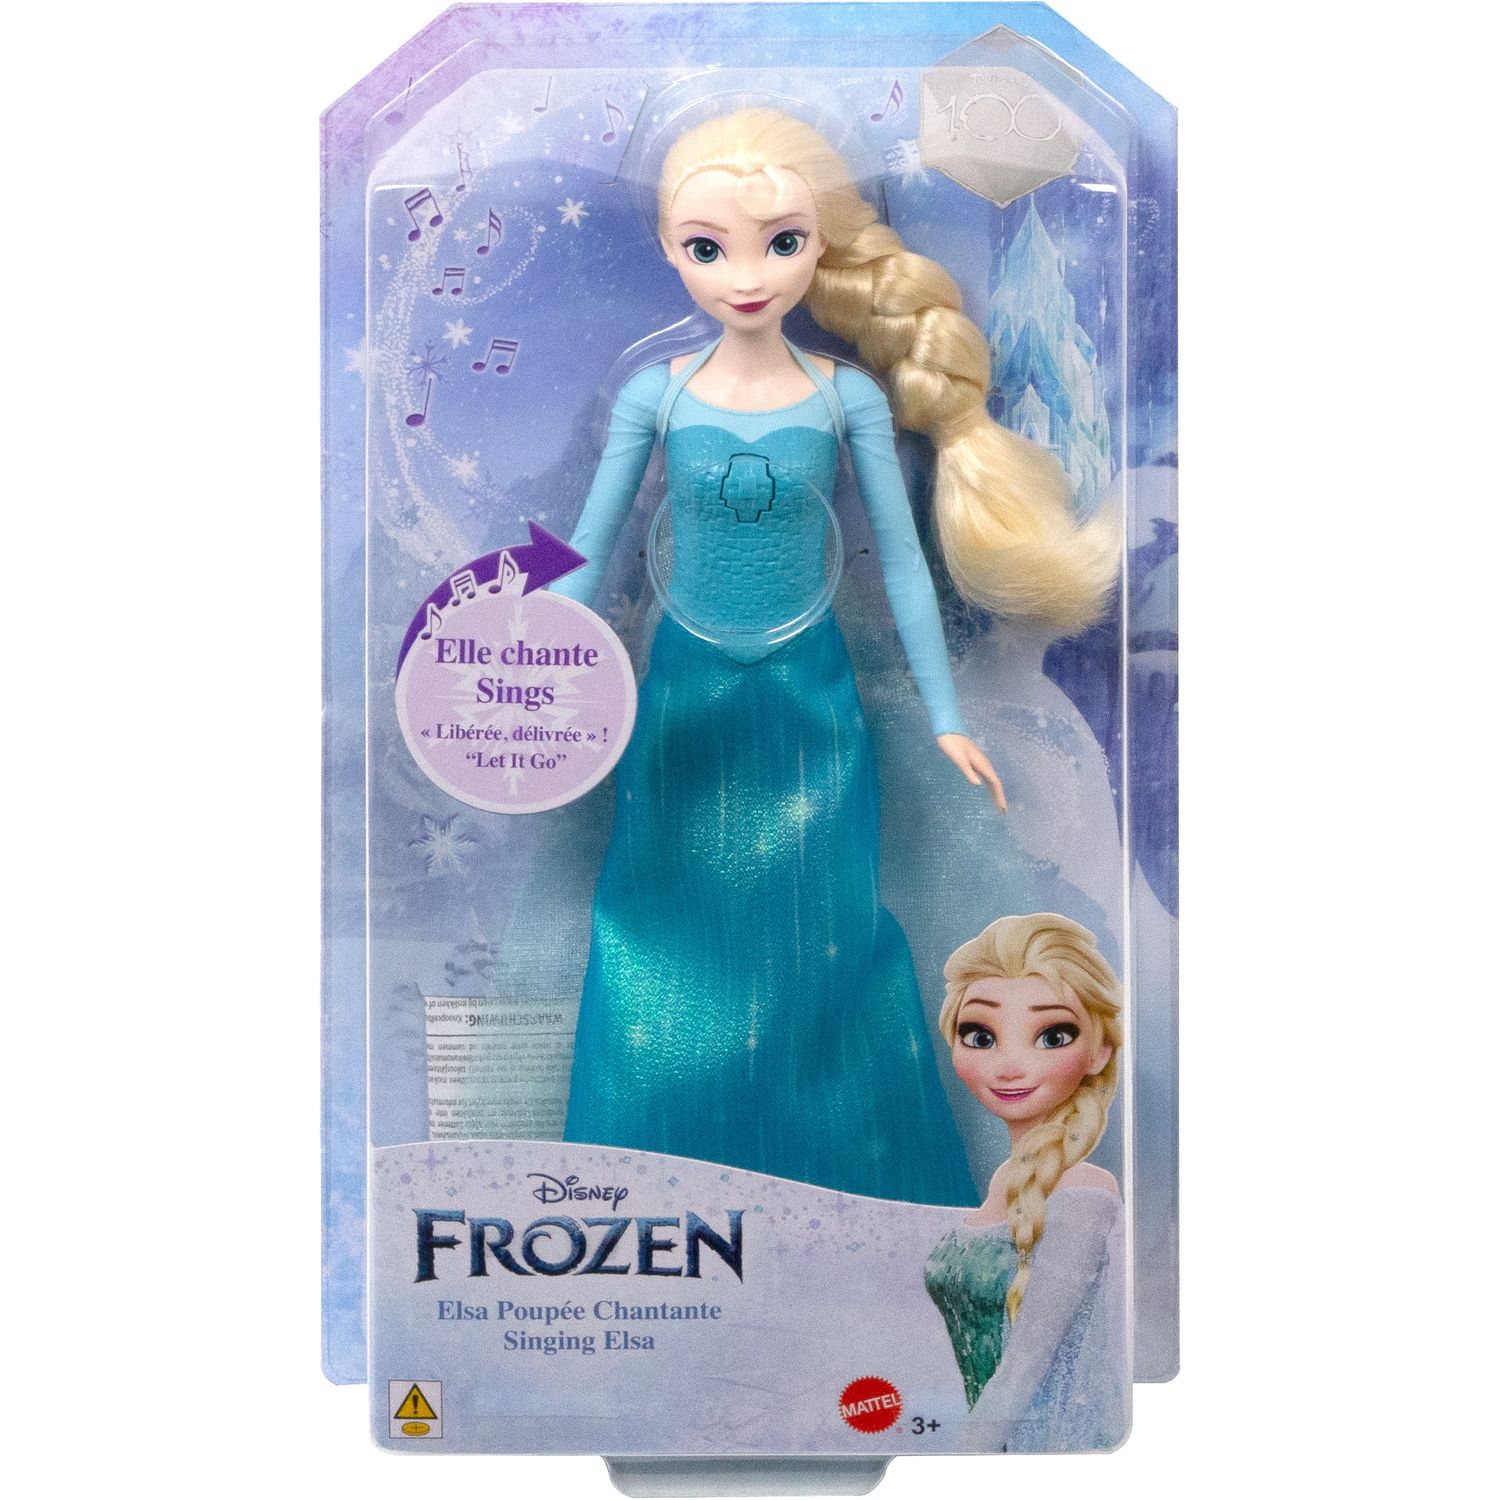 Poupee Elsa Reine des neiges qui chante - Reine des neiges